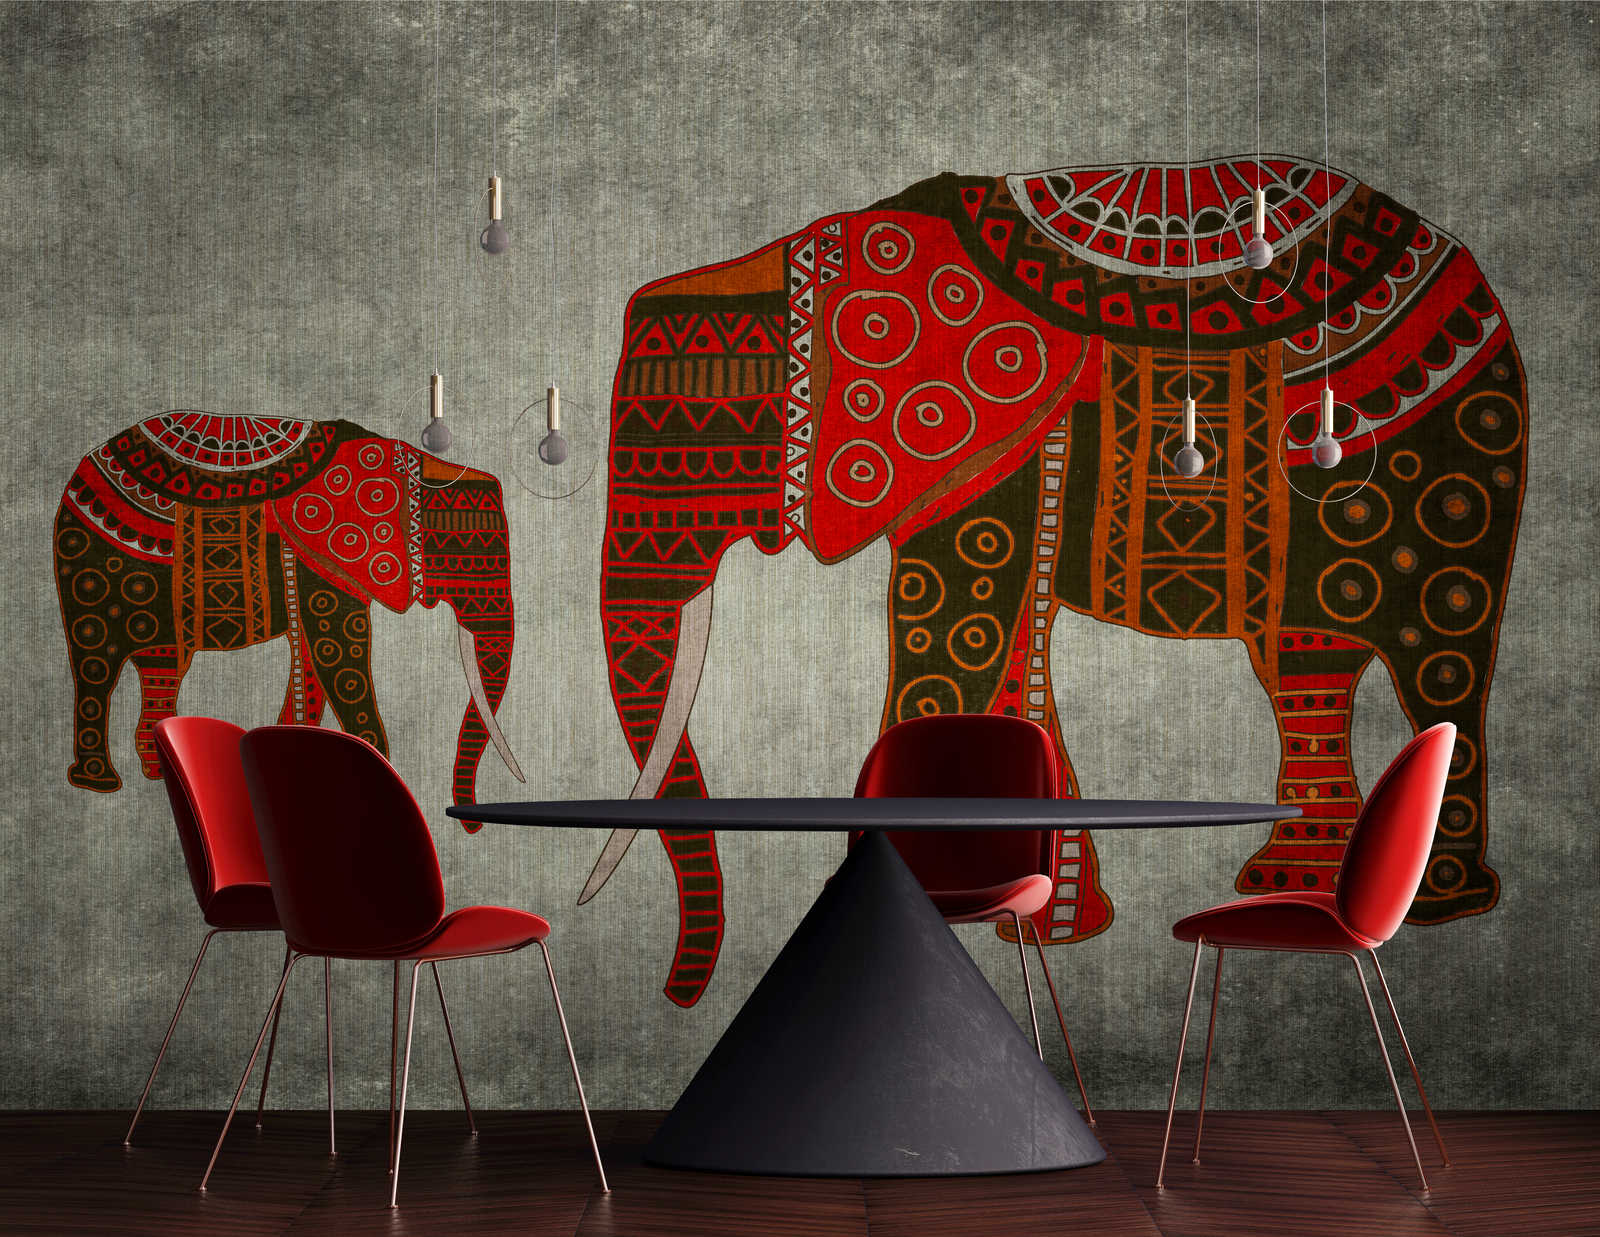             Nairobi 4 - Olifant Behang met Ethno Patronen & Textuureffect
        